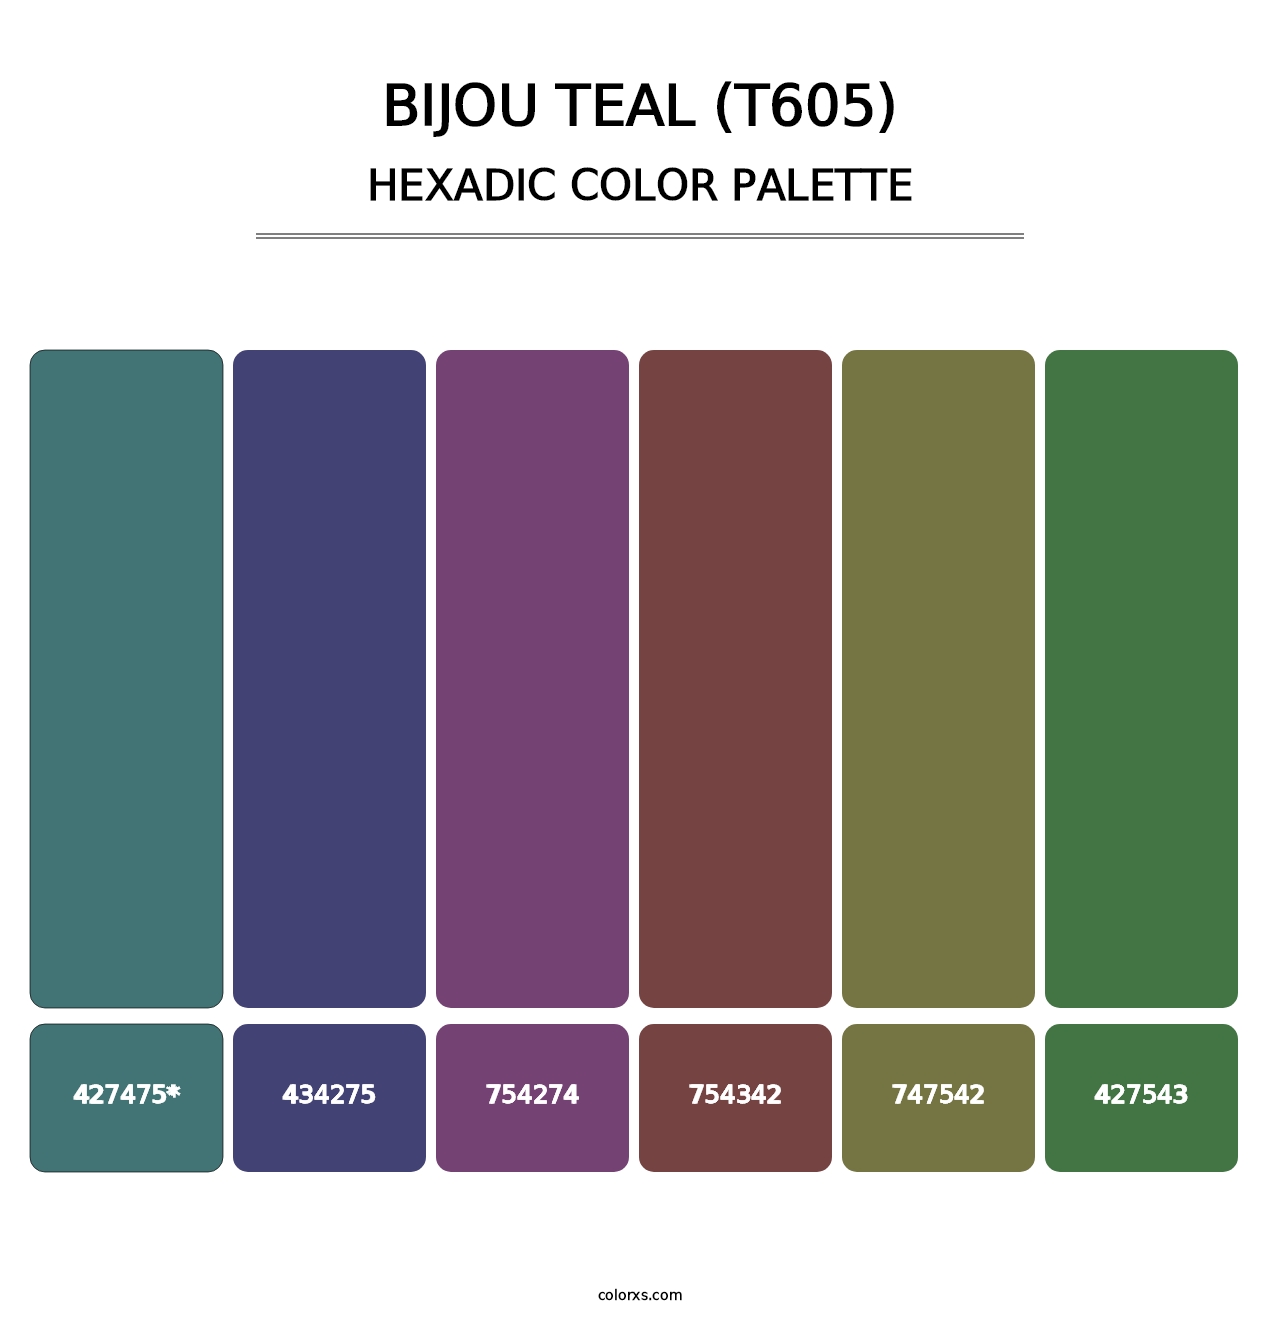 Bijou Teal (T605) - Hexadic Color Palette